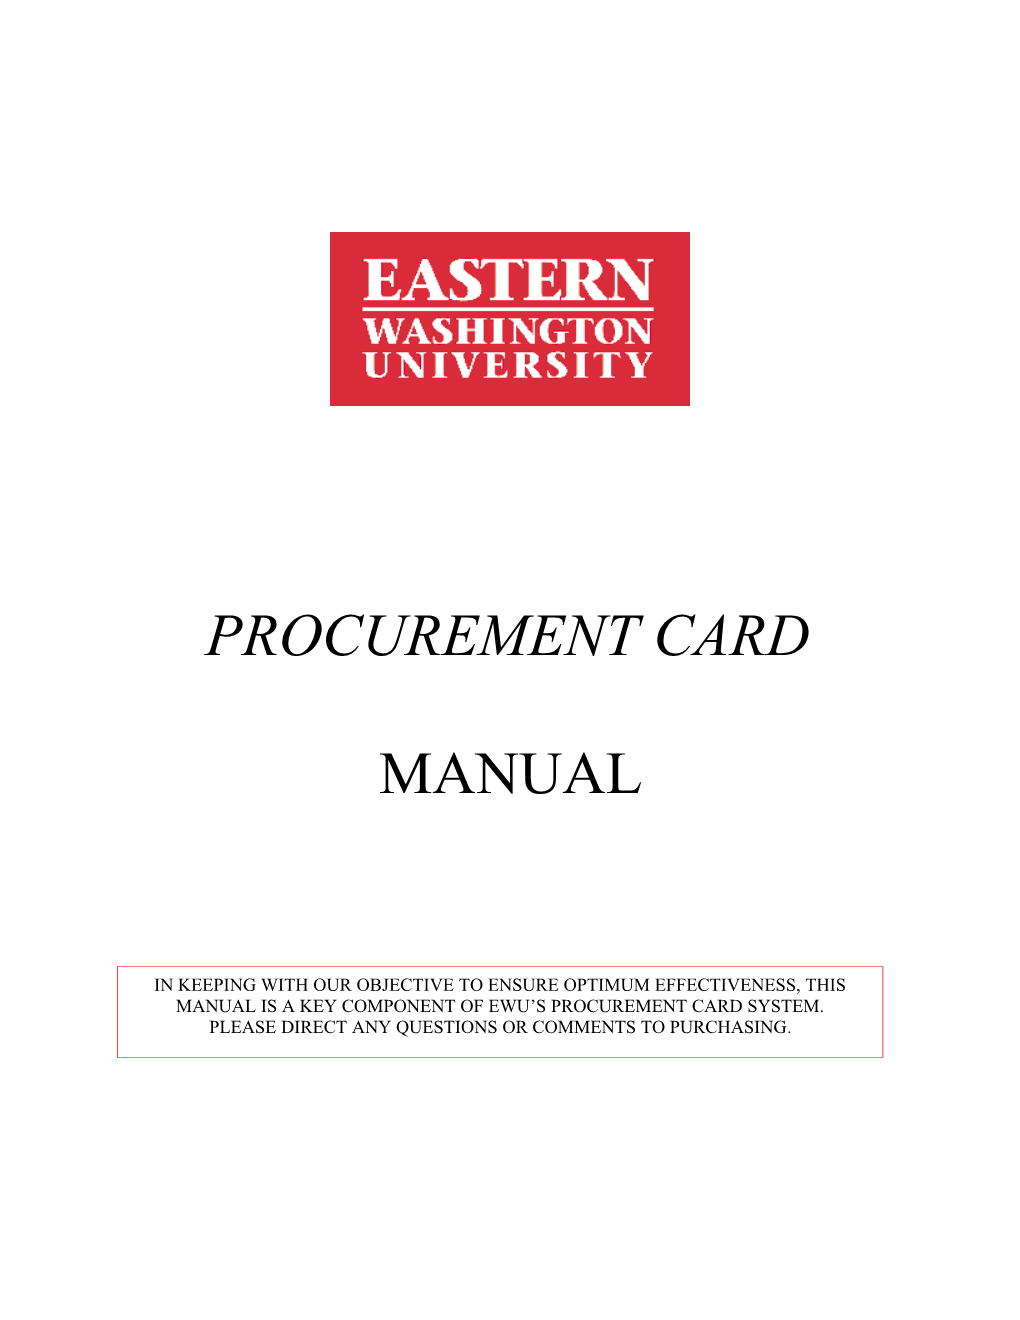 Online Procurement Card Procedures